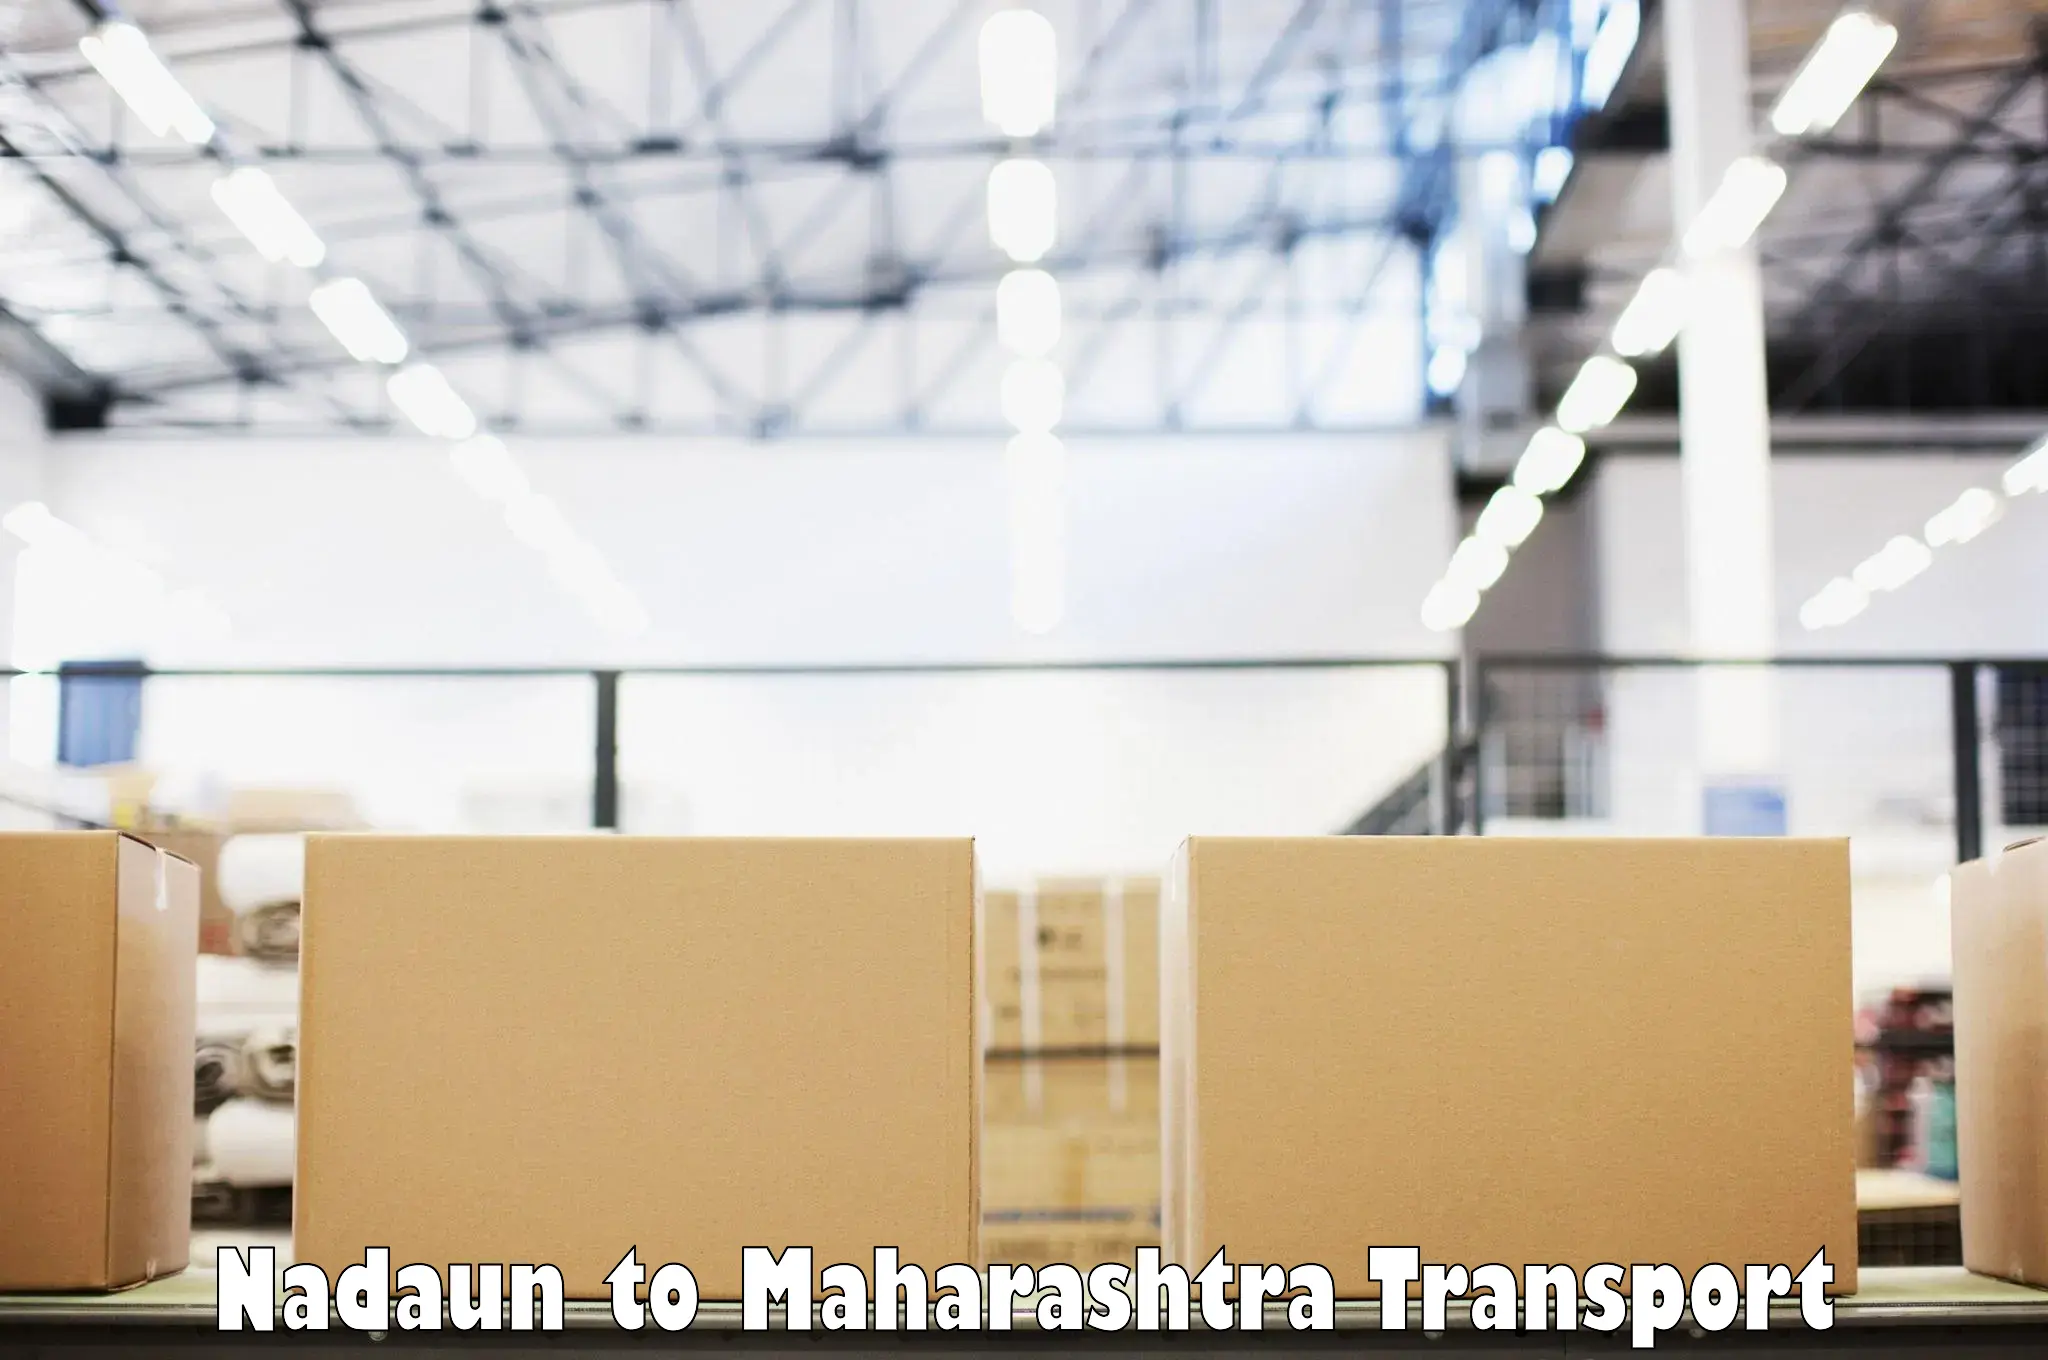 Commercial transport service Nadaun to Maharashtra